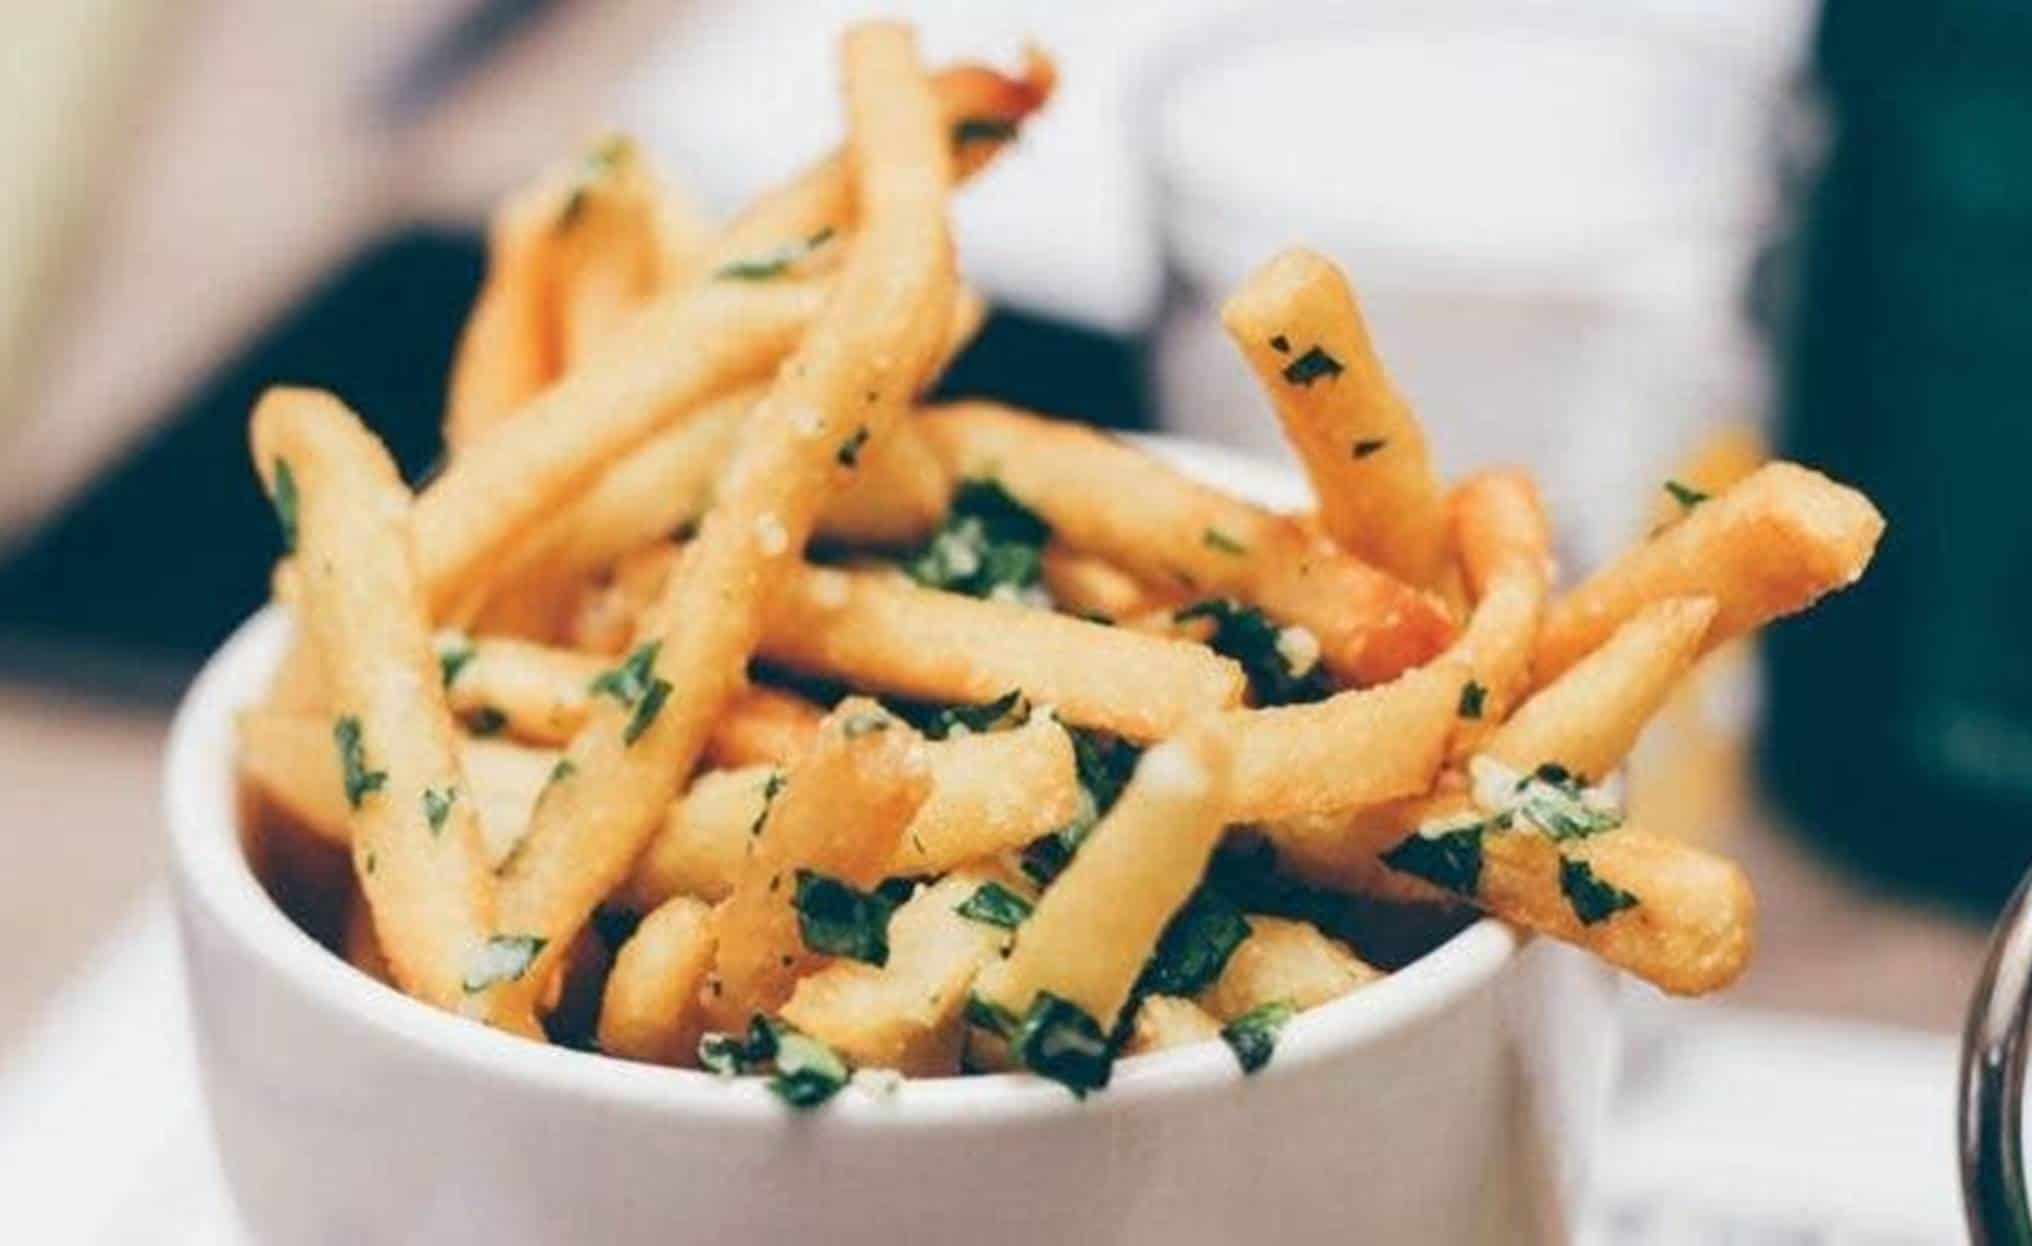 Truques do chef: veja como fazer batatas fritas mais saudáveis